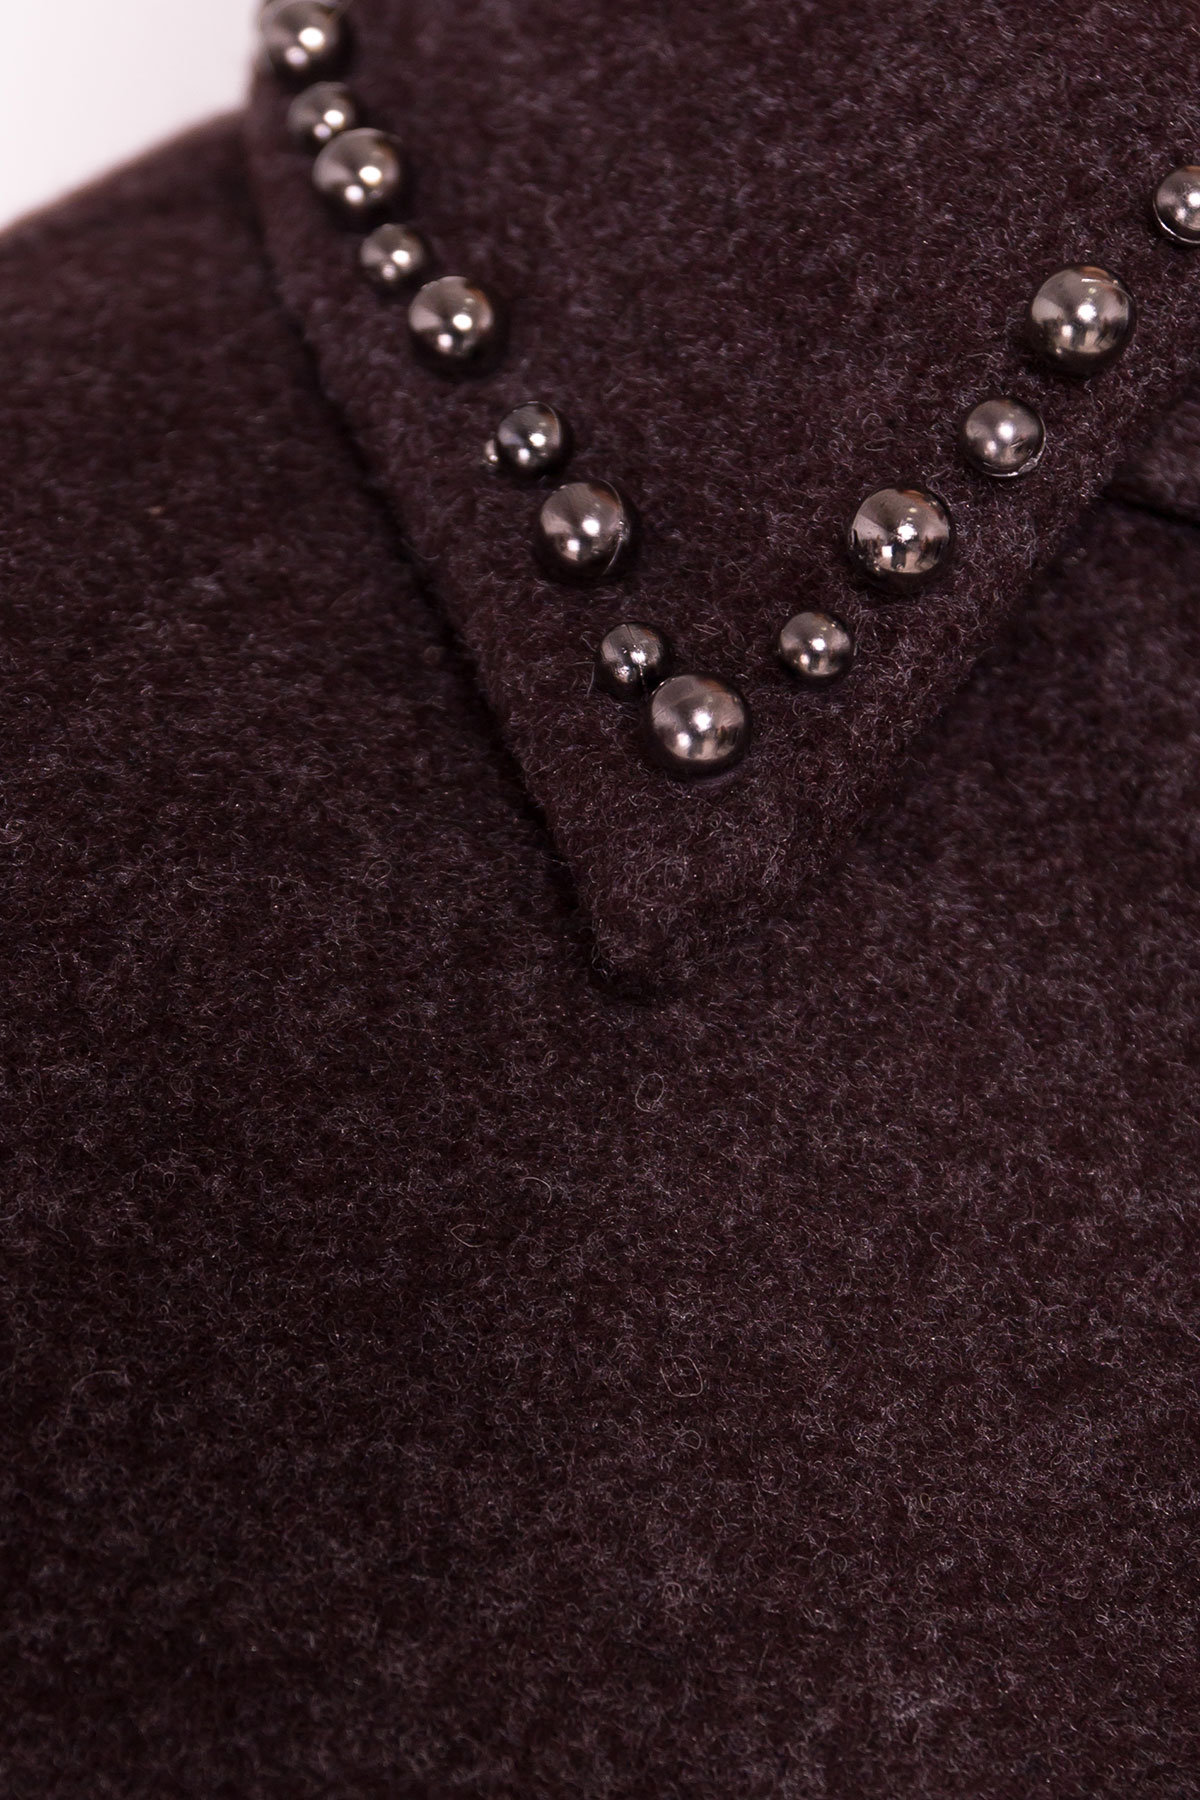 Кашемировое демисезонное пальто с декором Алина 5248 АРТ. 36622 Цвет: Шоколад - фото 7, интернет магазин tm-modus.ru